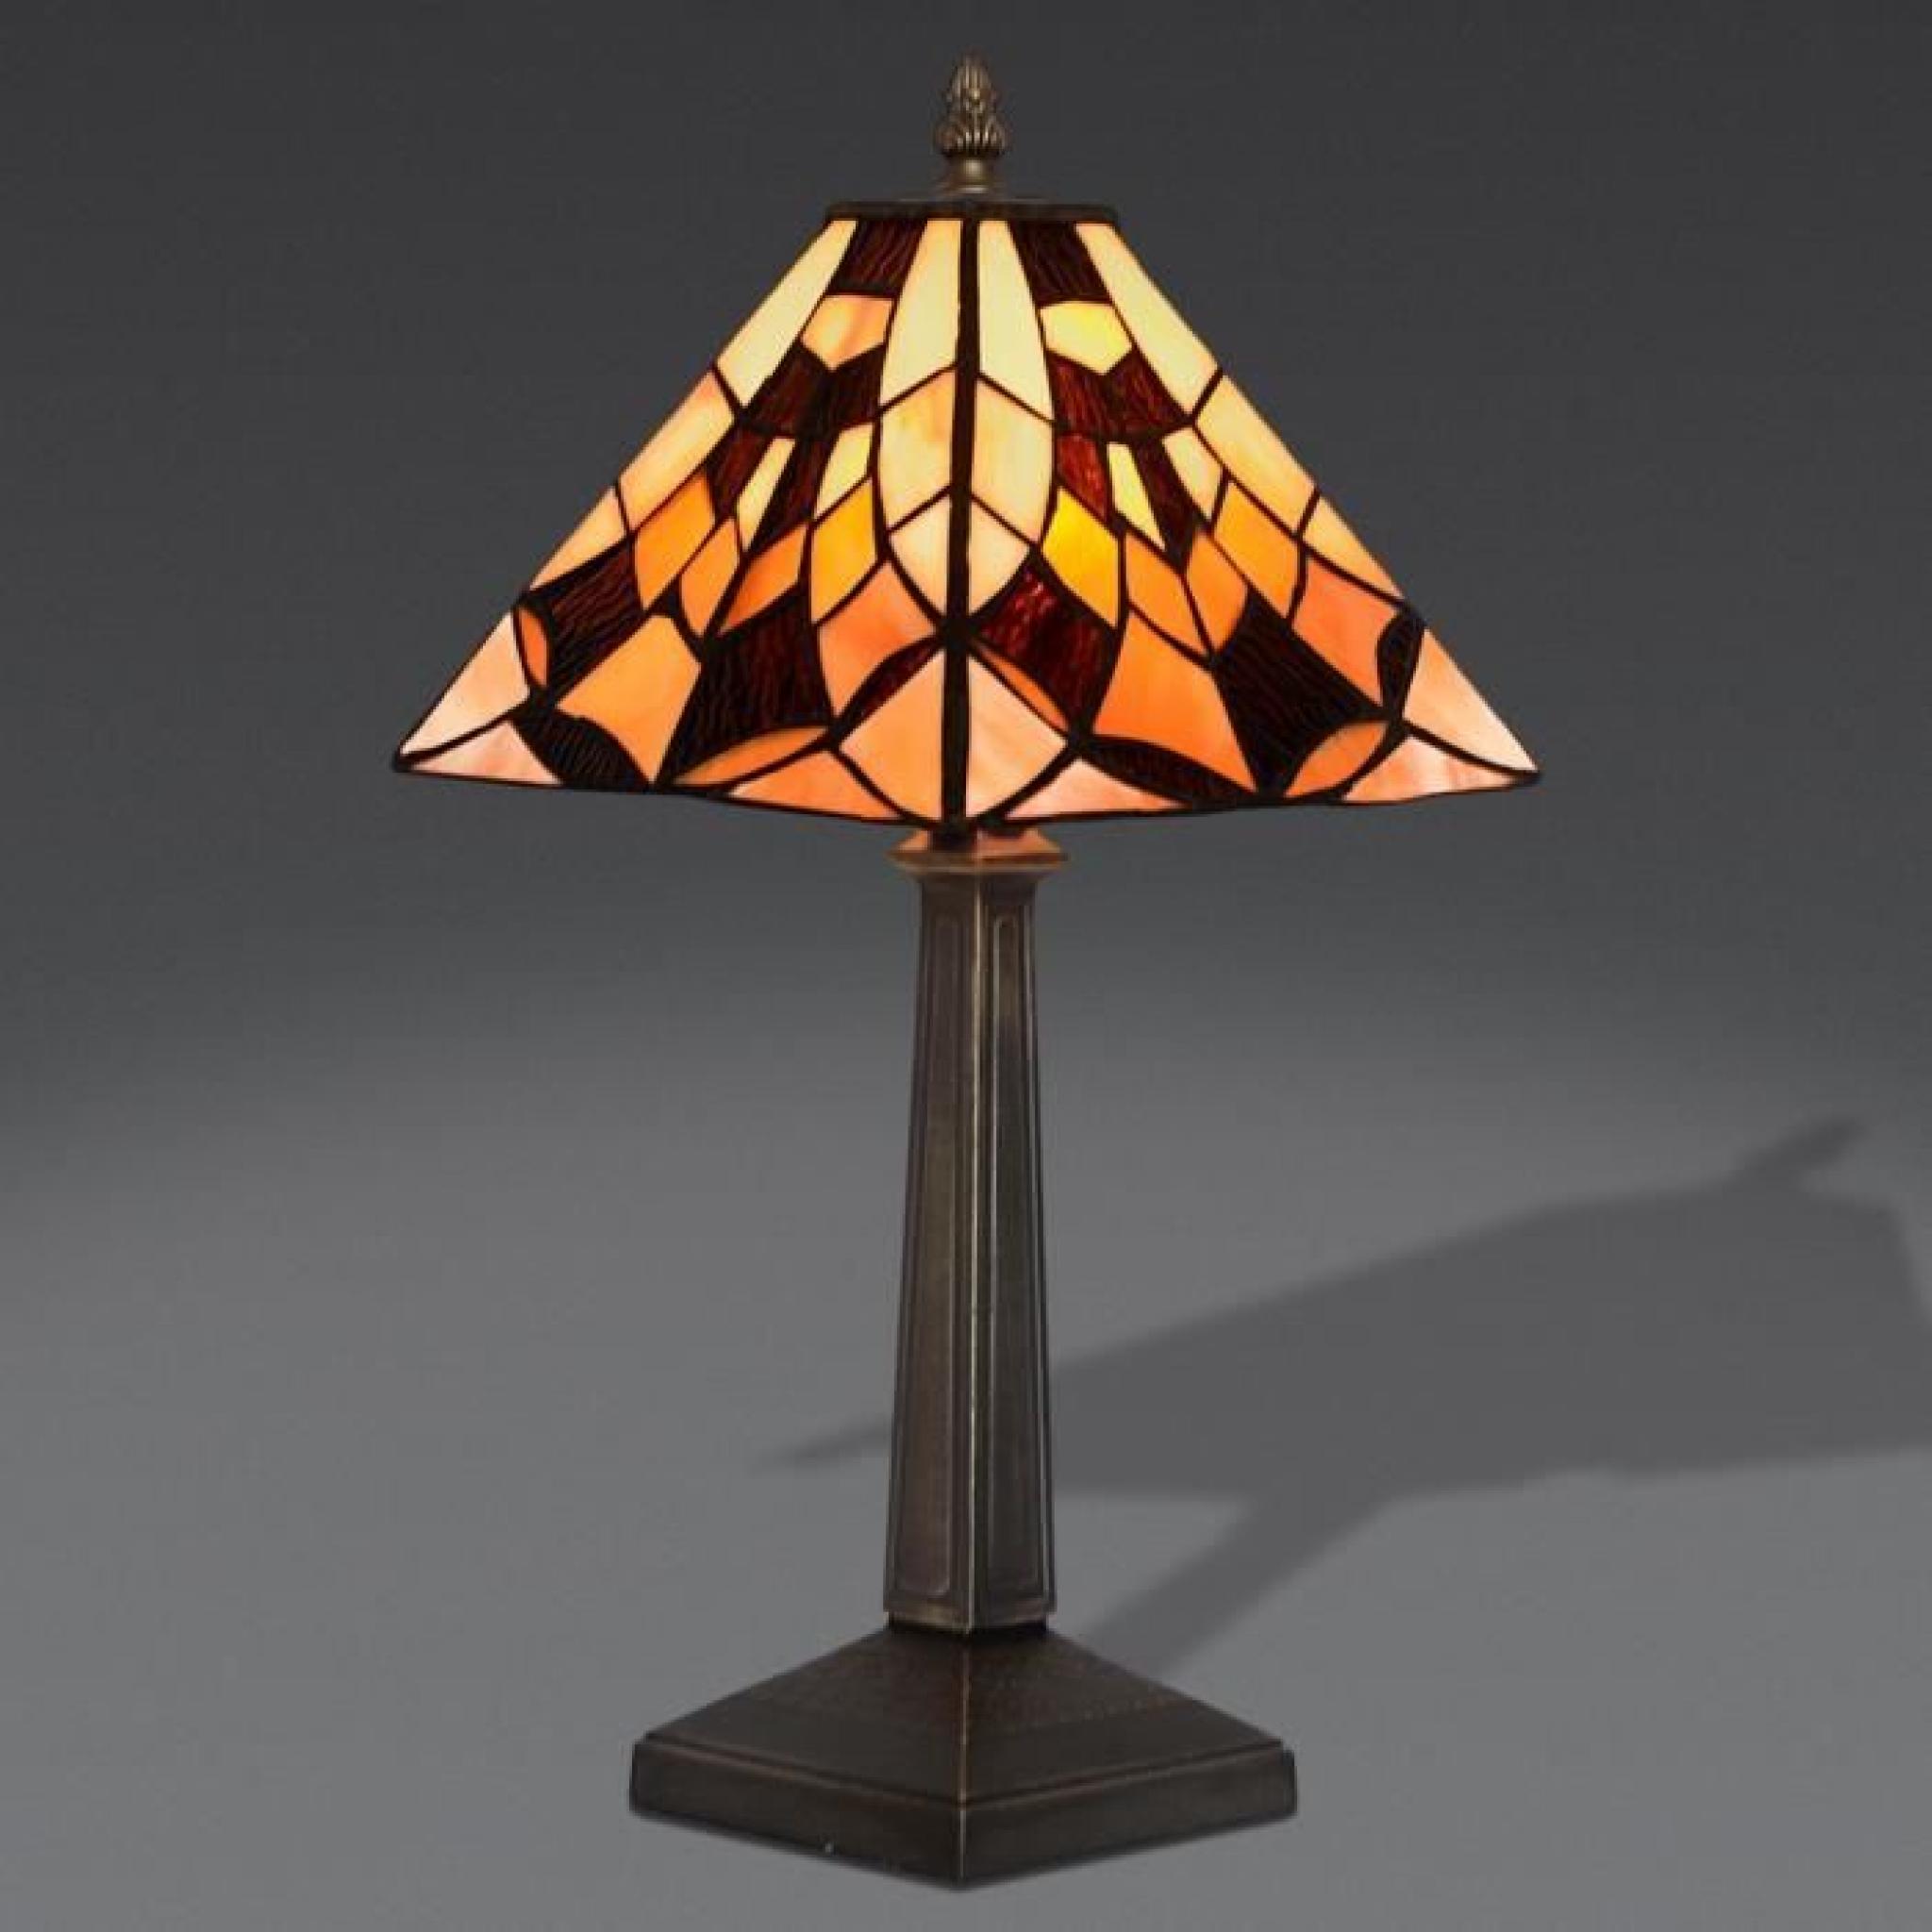 Chevet égyptienne Lampe de chevet avec abat-jour de verre soudé de style Tiffany et base de métallique bronzé